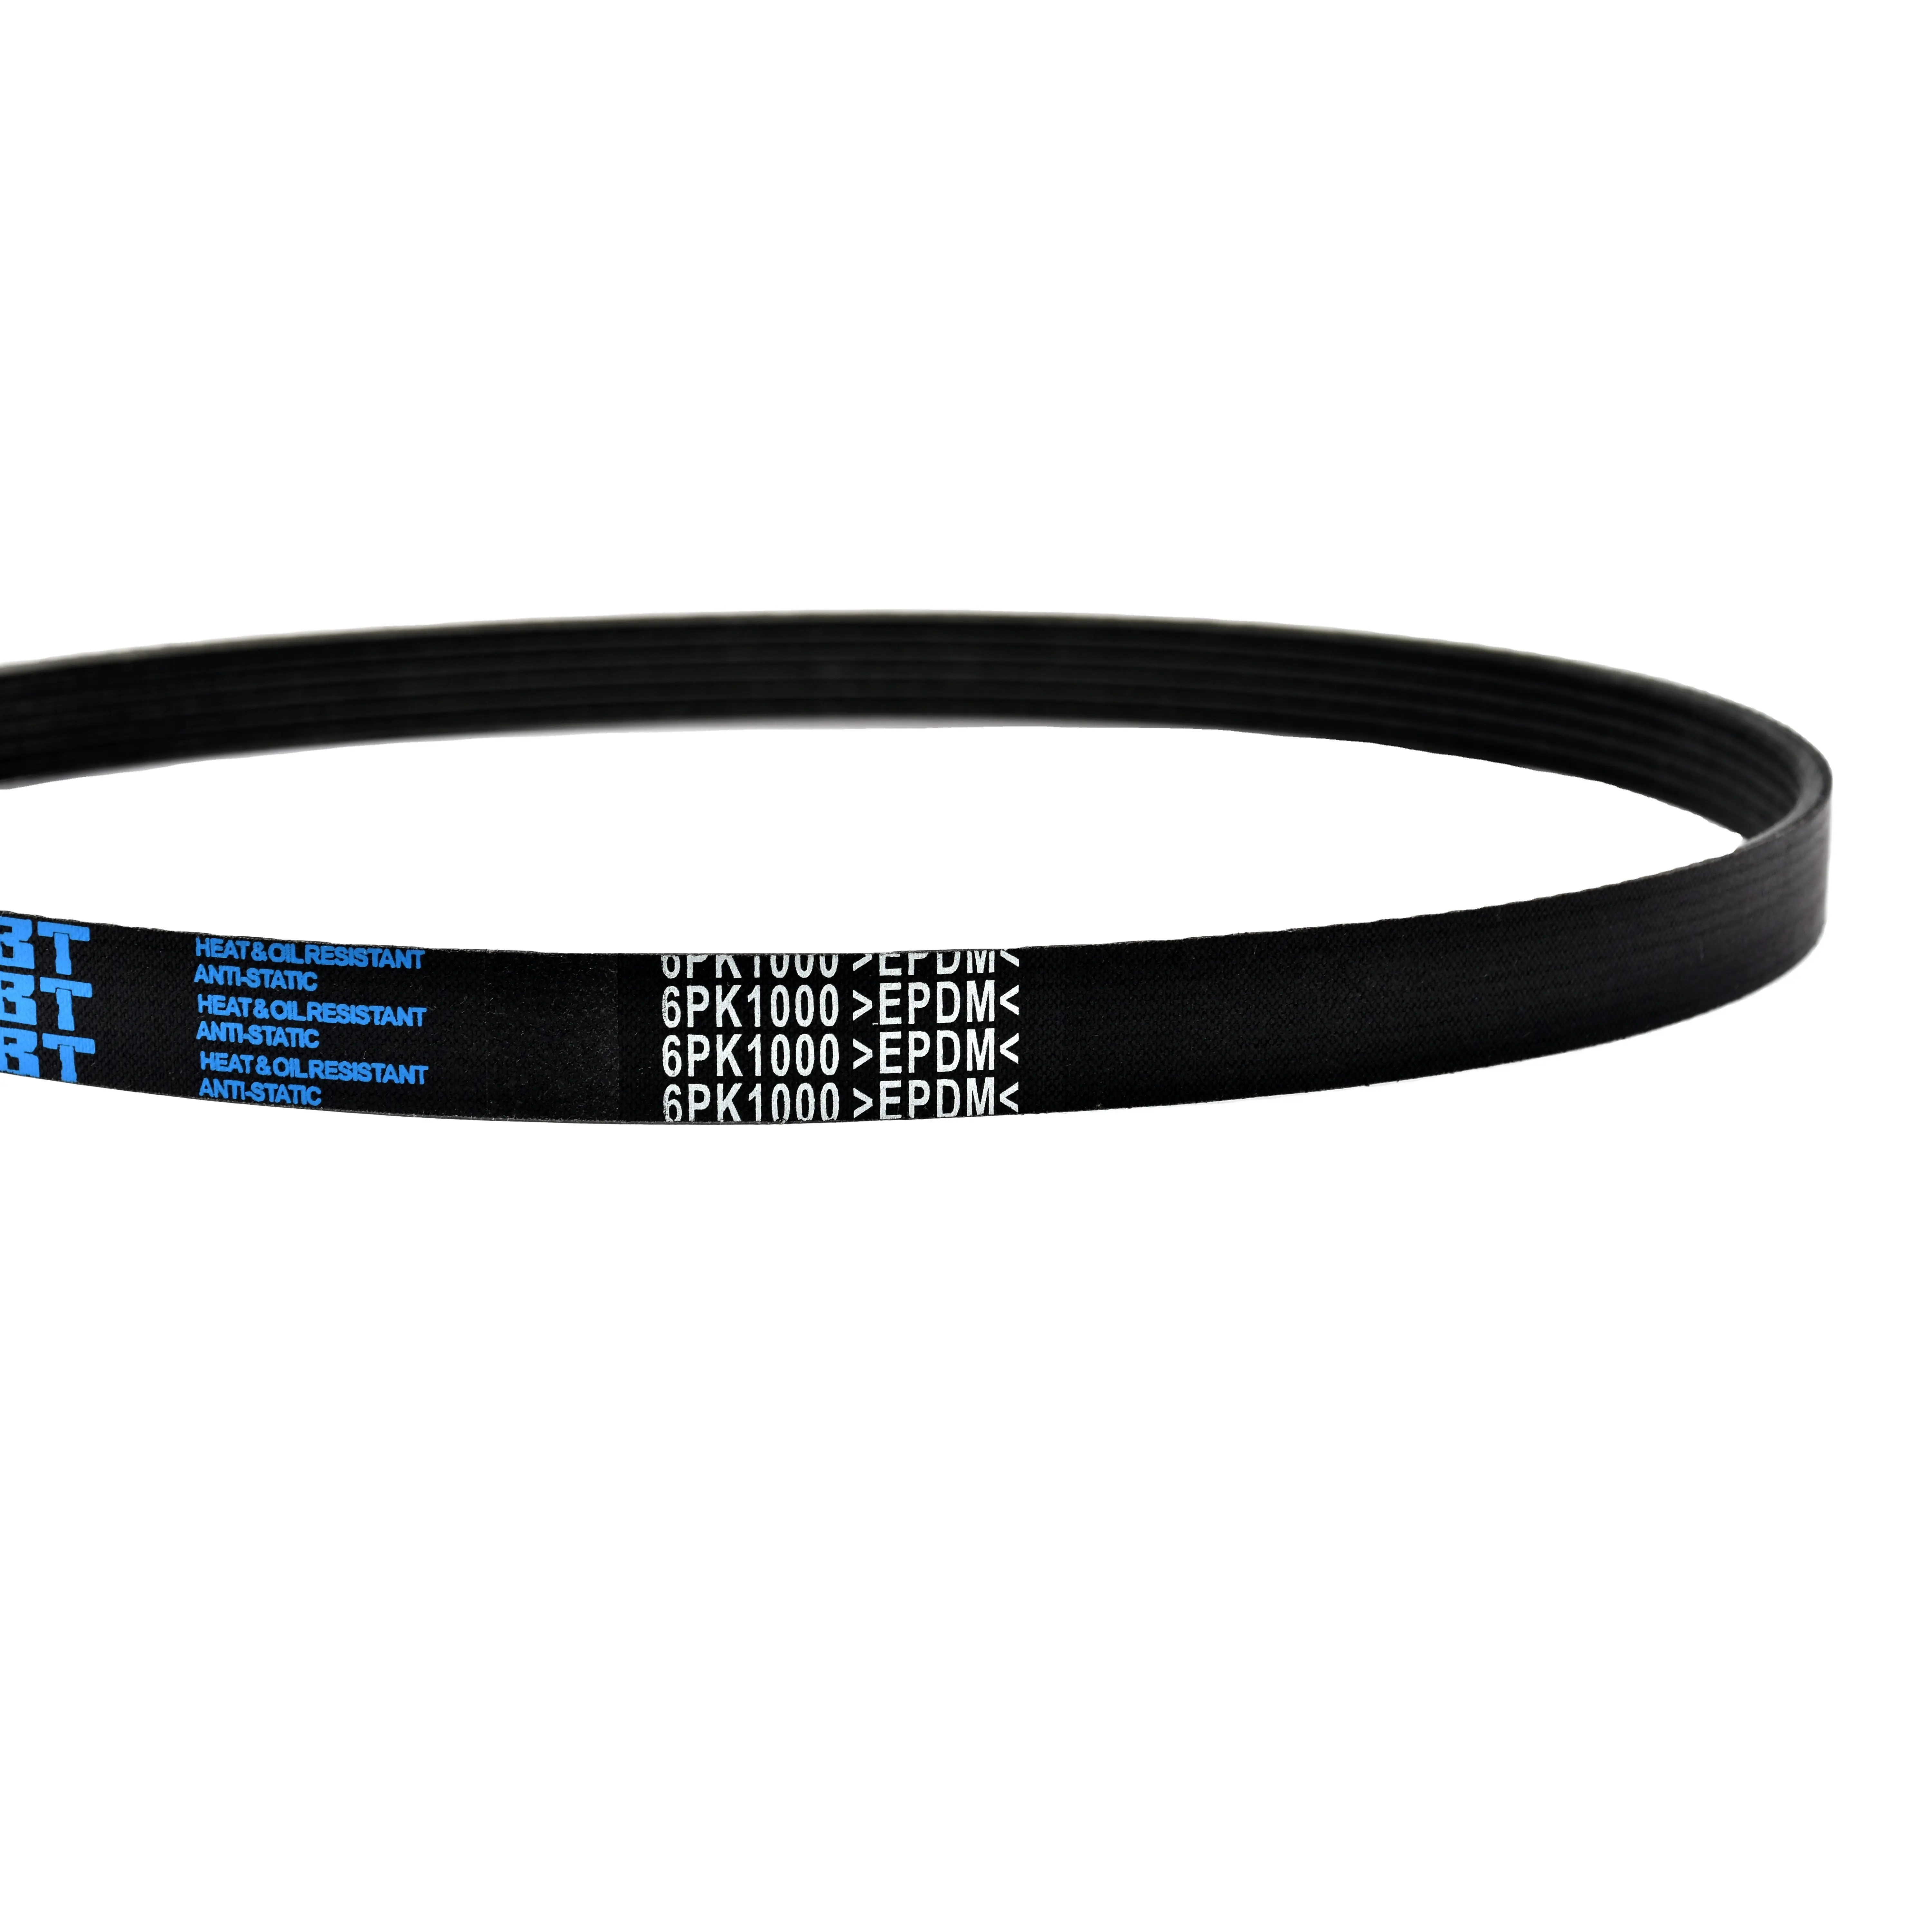 China Rubber V-Belt/Industrial Rubber Belt/Replacement Rubber Timing Belt Manufacturer